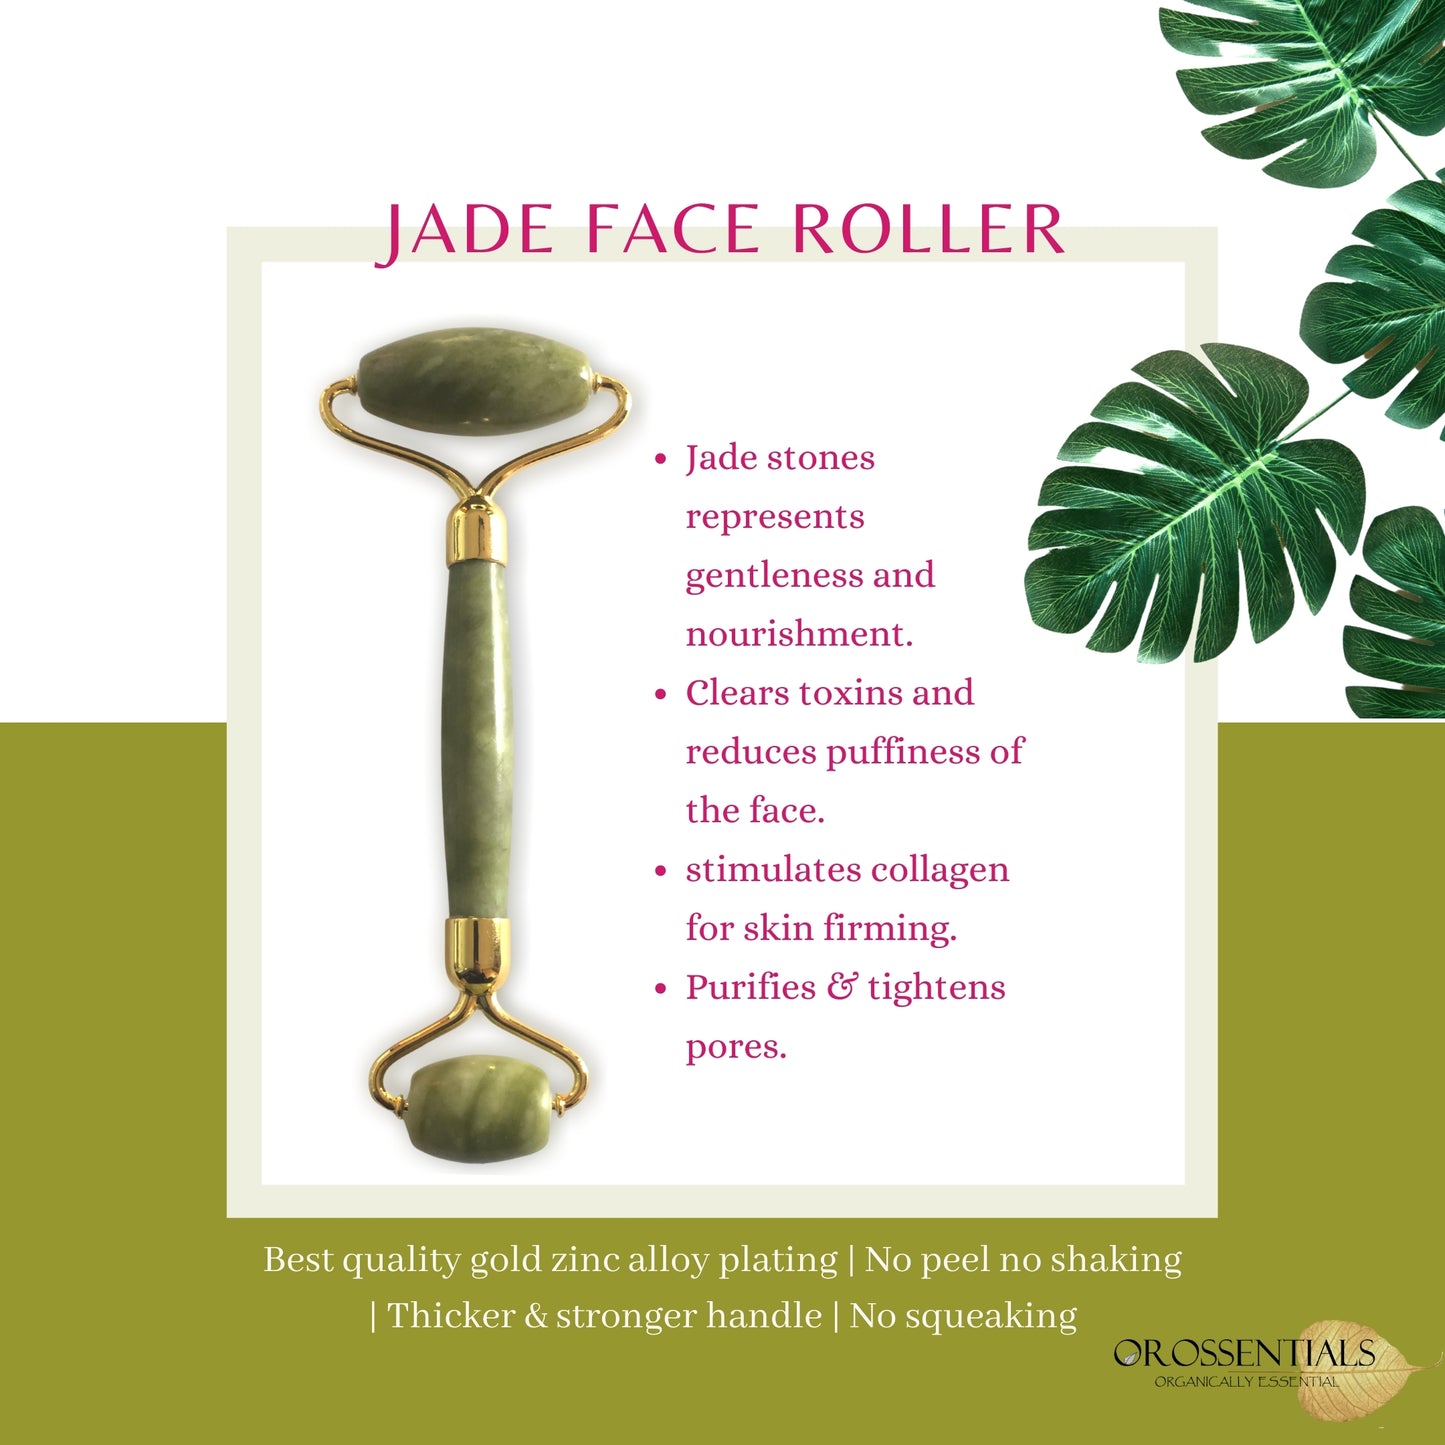 Jade face roller